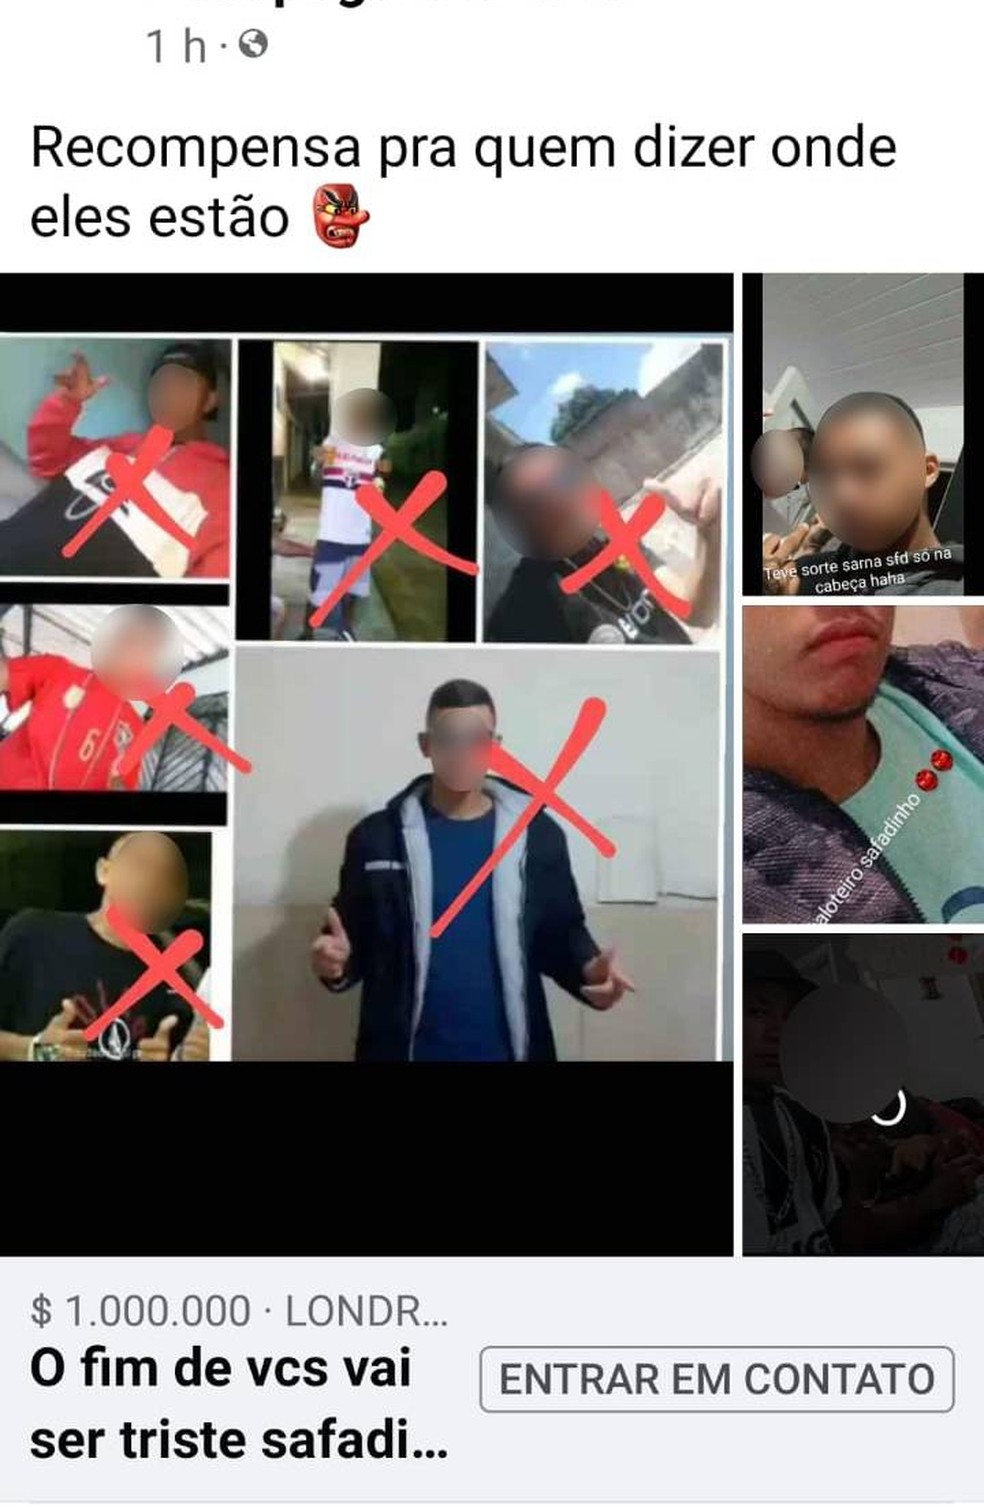 Criminosos publicam fotos de vítimas e oferecem recompensa por informações na rede social — Foto: Divulgação/Polícia Civil